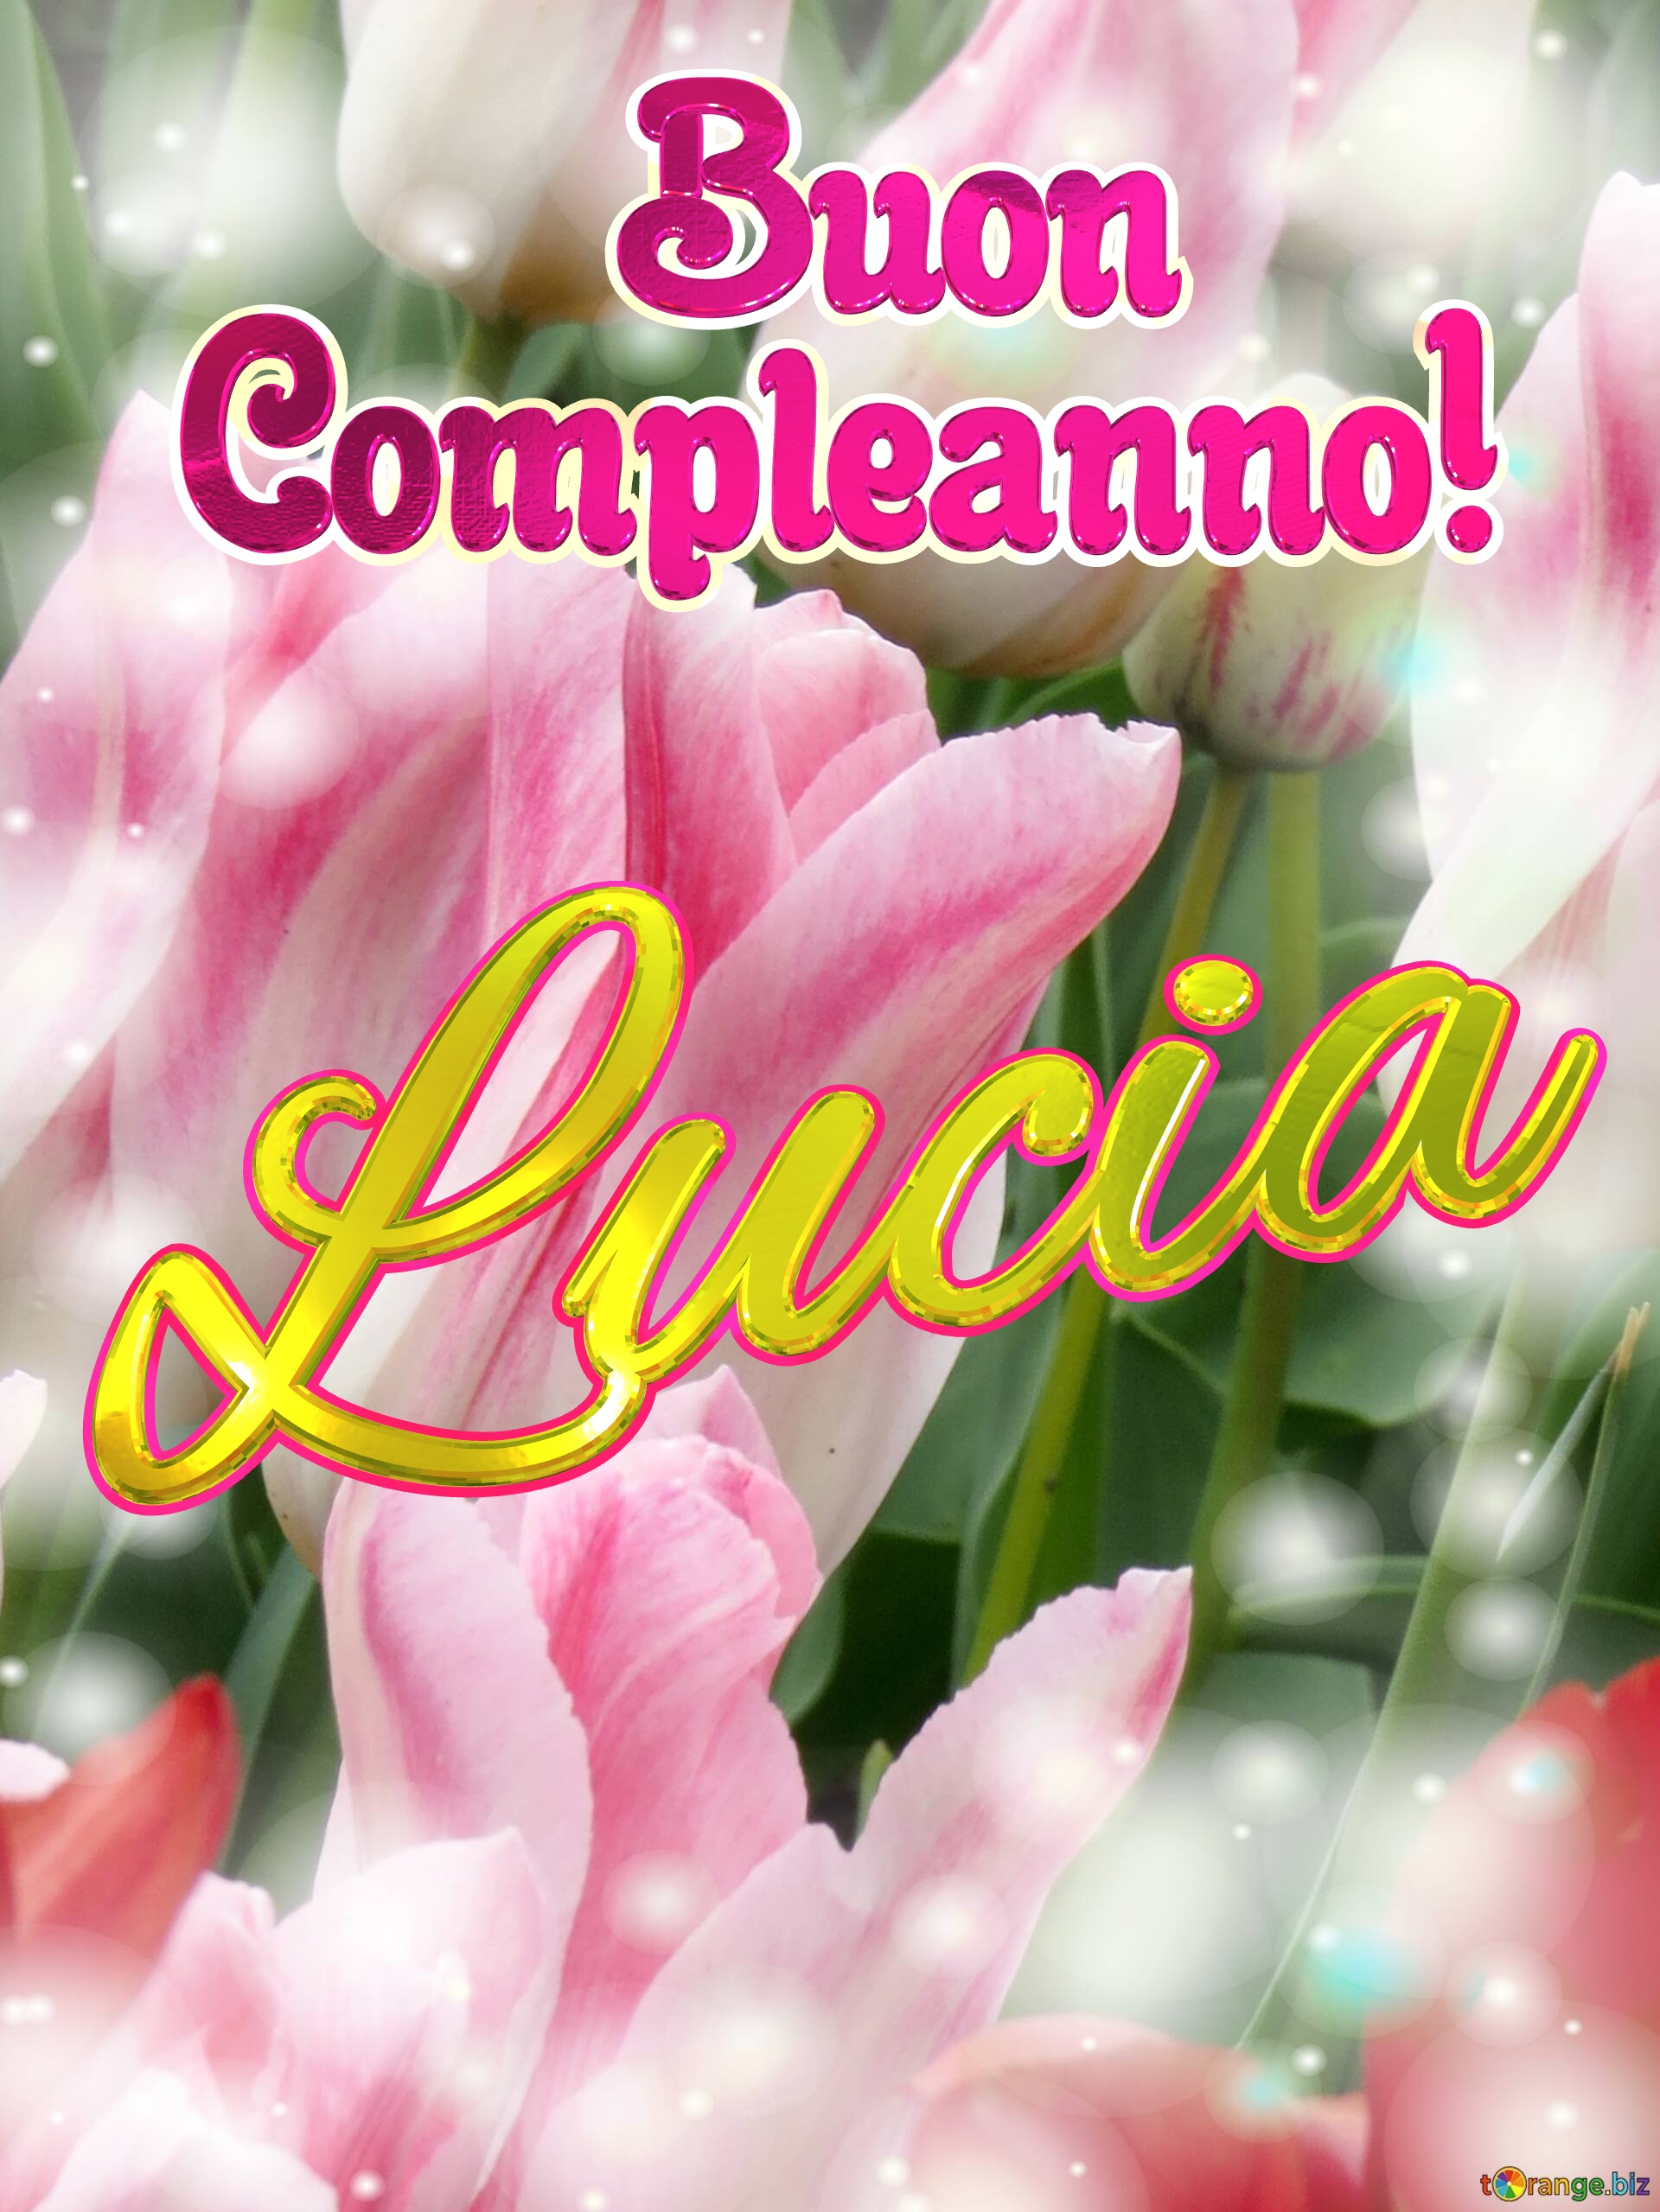       Buon  Compleanno! Lucia  Buona primavera, che questi tulipani ti portino la speranza e la felicità. №0